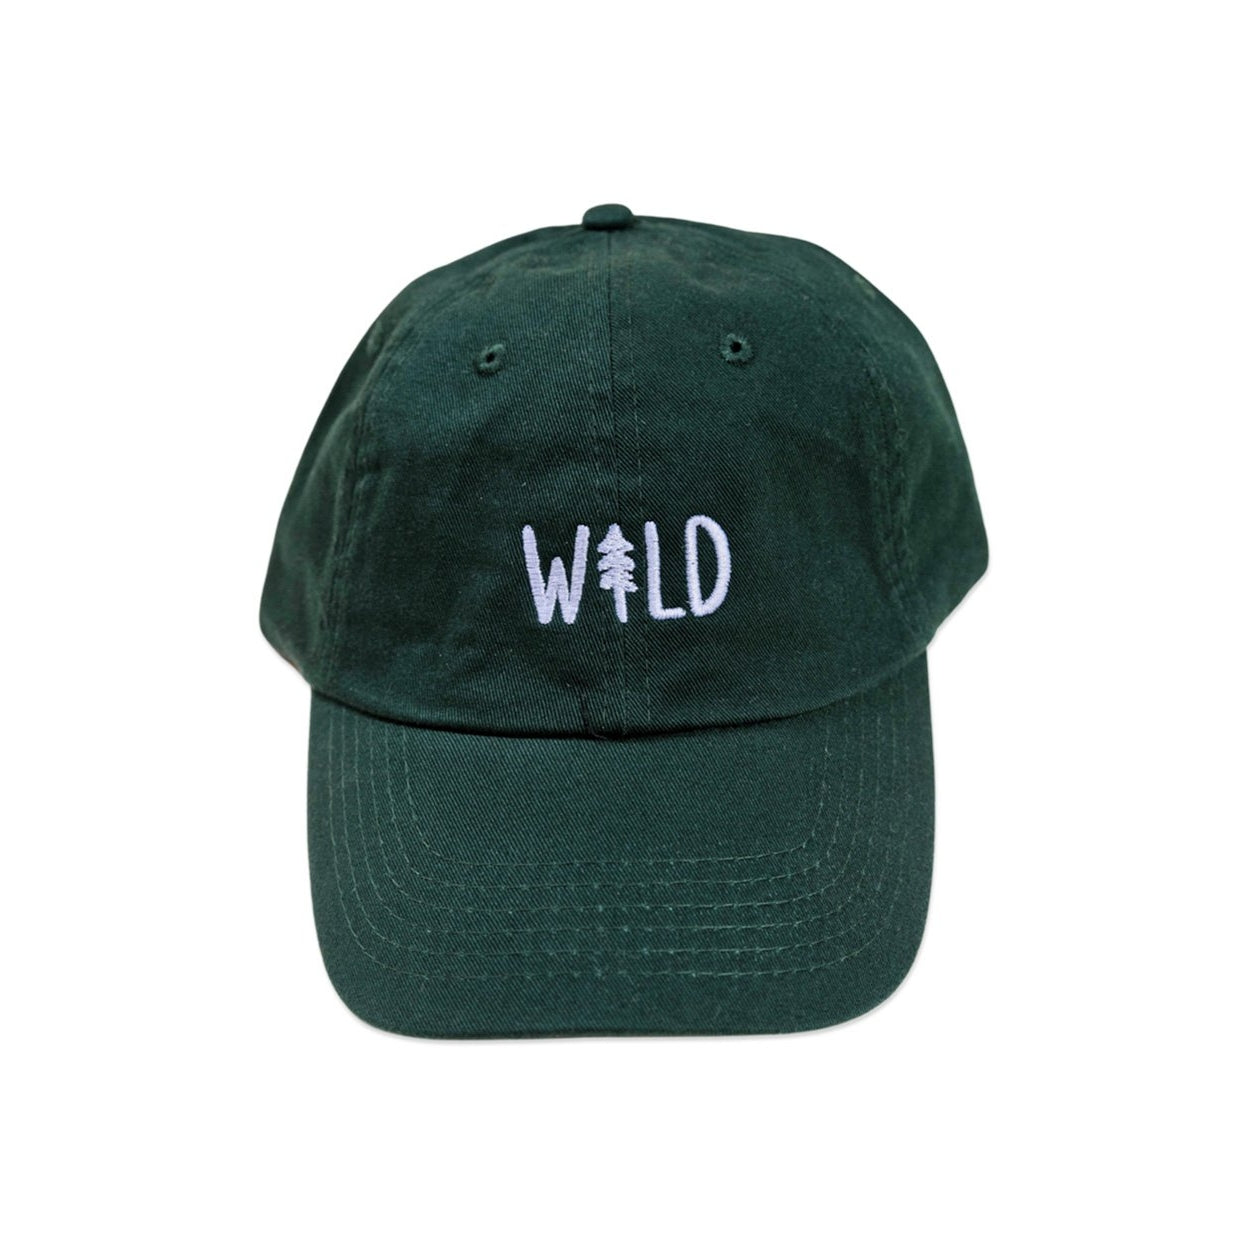 Wild Pine Dad Hat